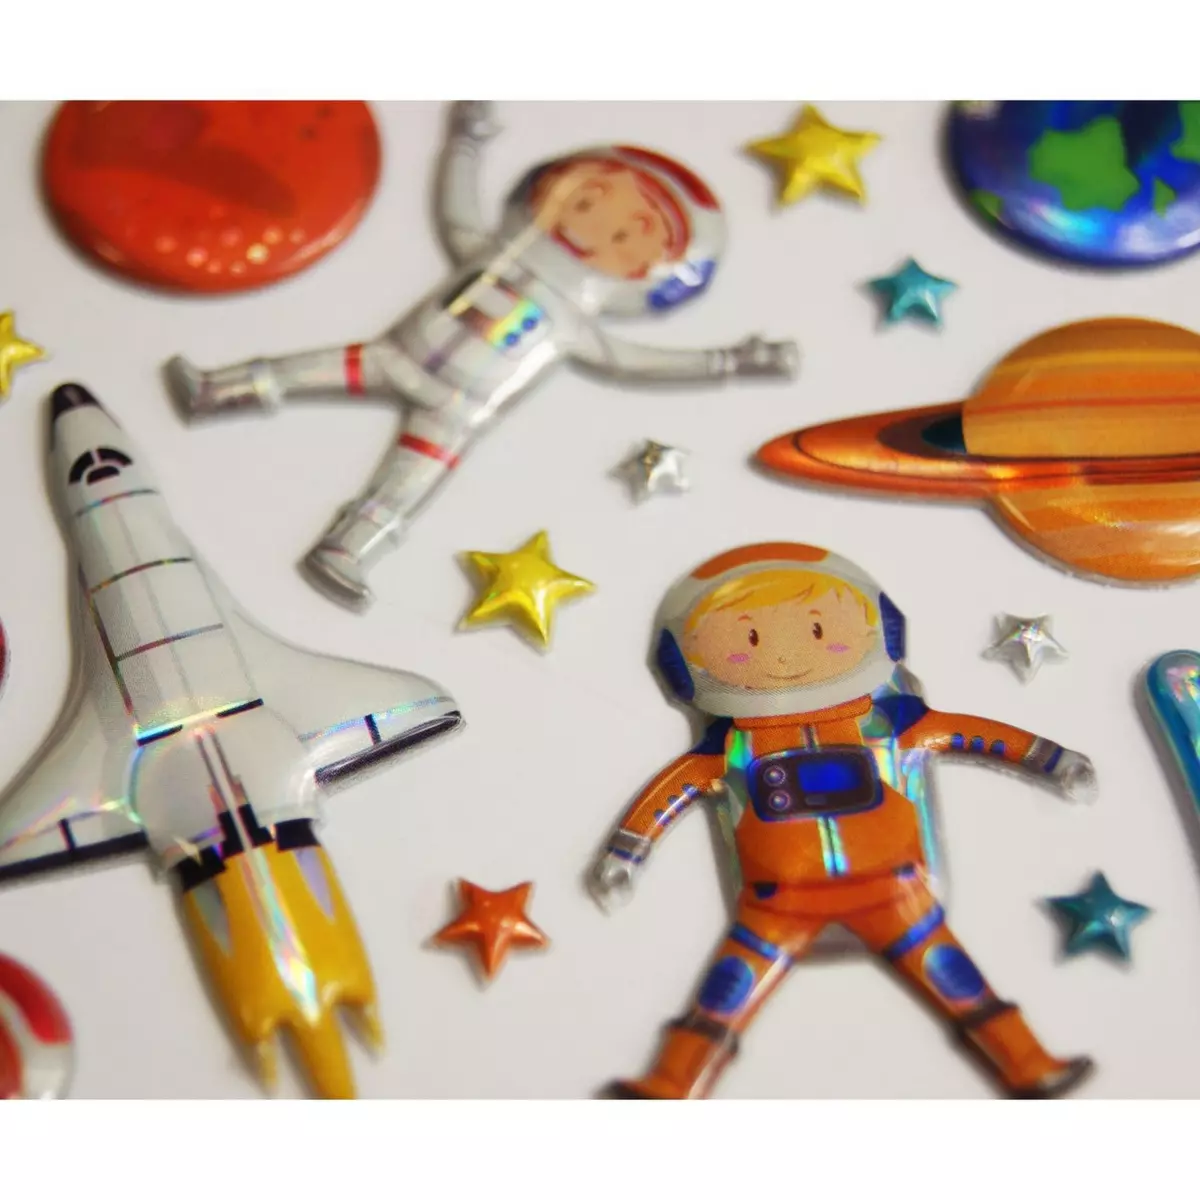  Scène à décorer pour enfants - Explorons l'espace ! - Stickers Puffies